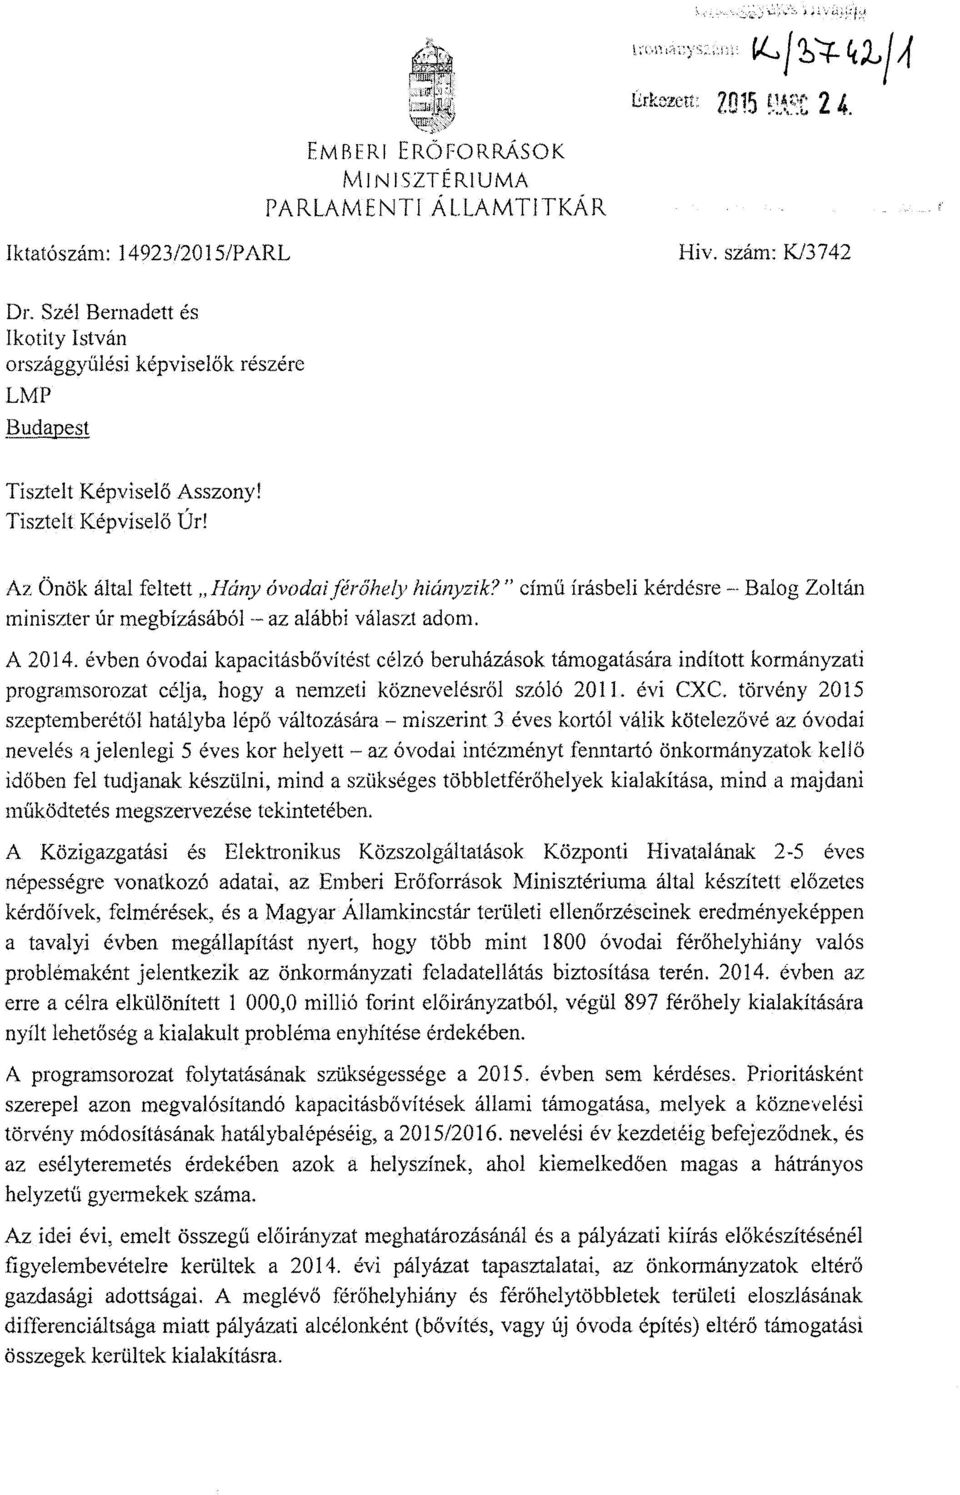 cím ű írásbeli kérdésre Balog Zoltán miniszter úr megbízásából -- az alábbi választ adom. A 2014.